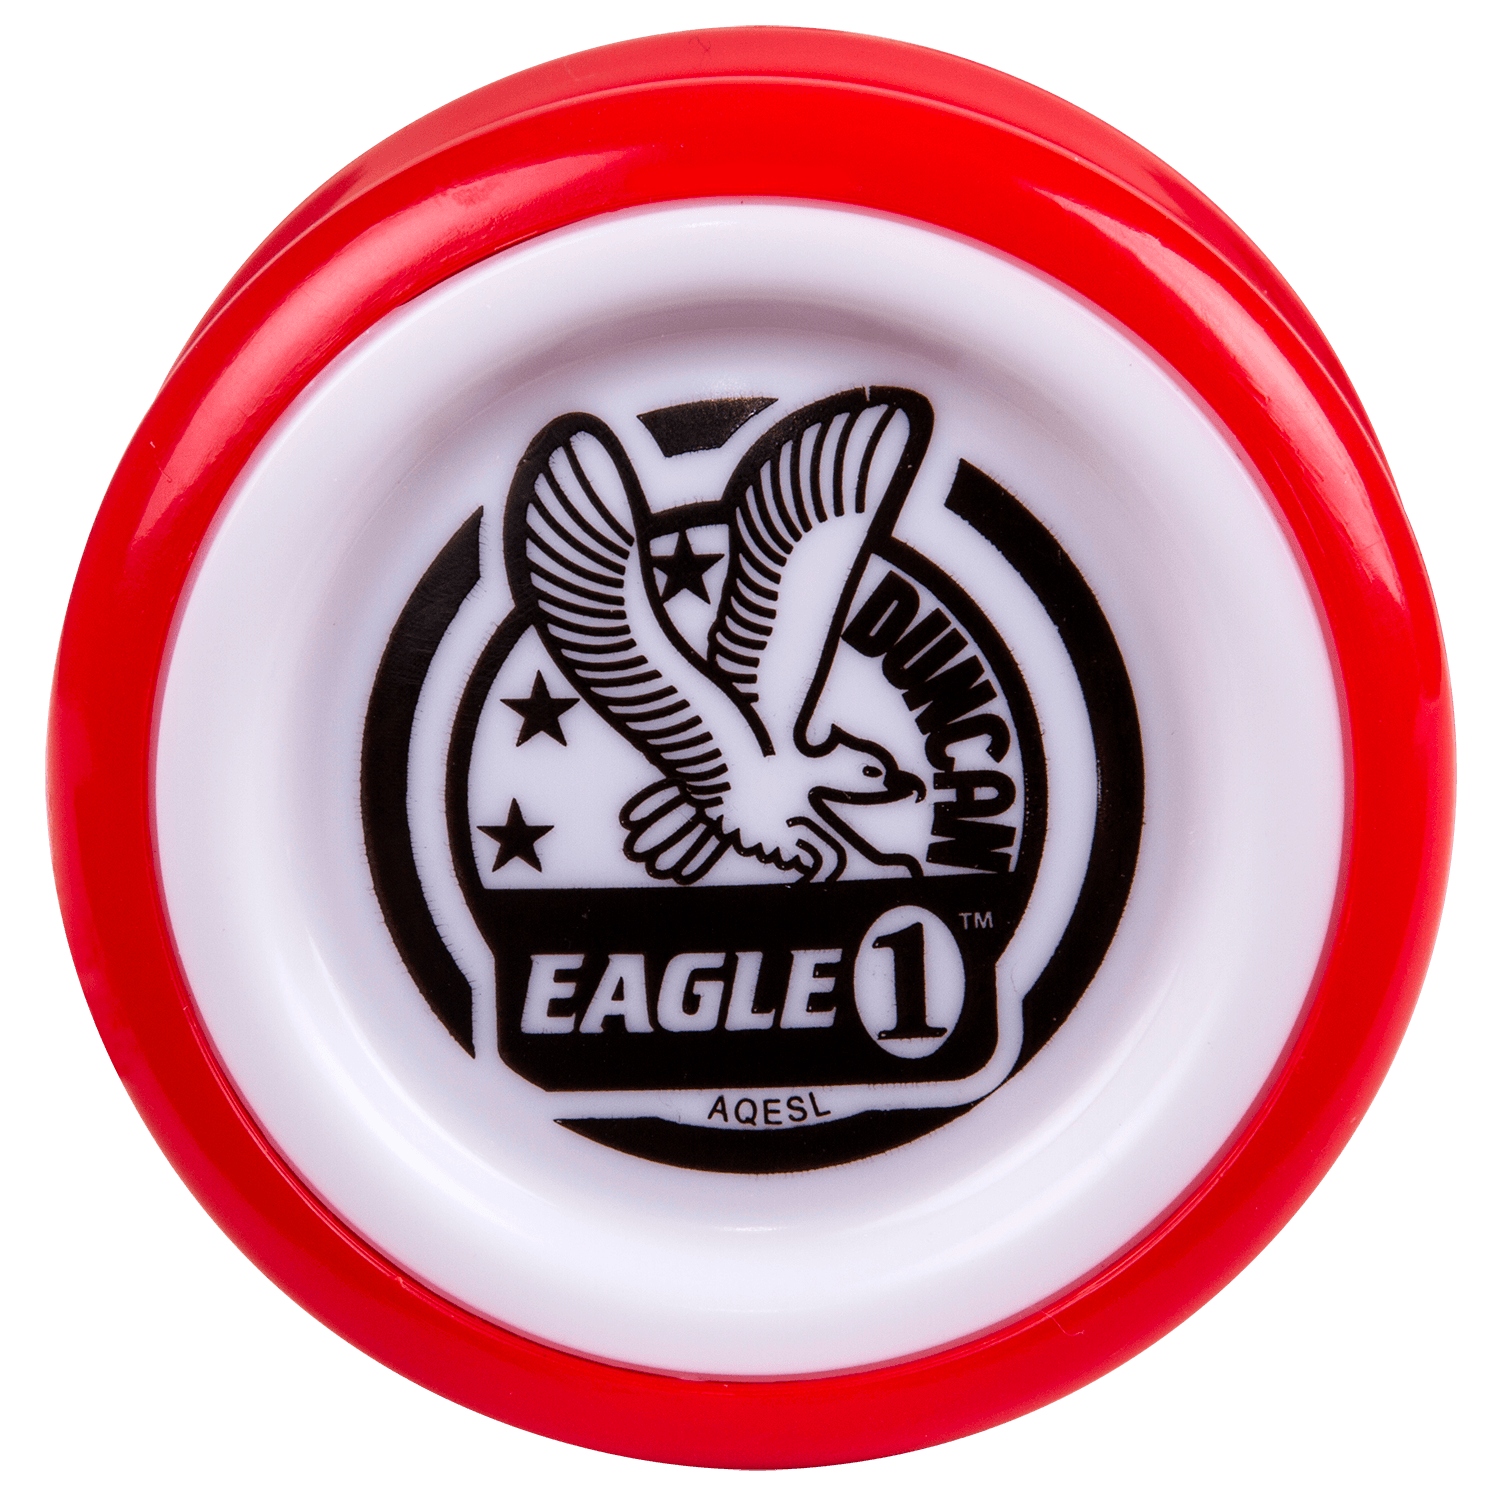 Eagle1 Yo Yo- Ages 6+